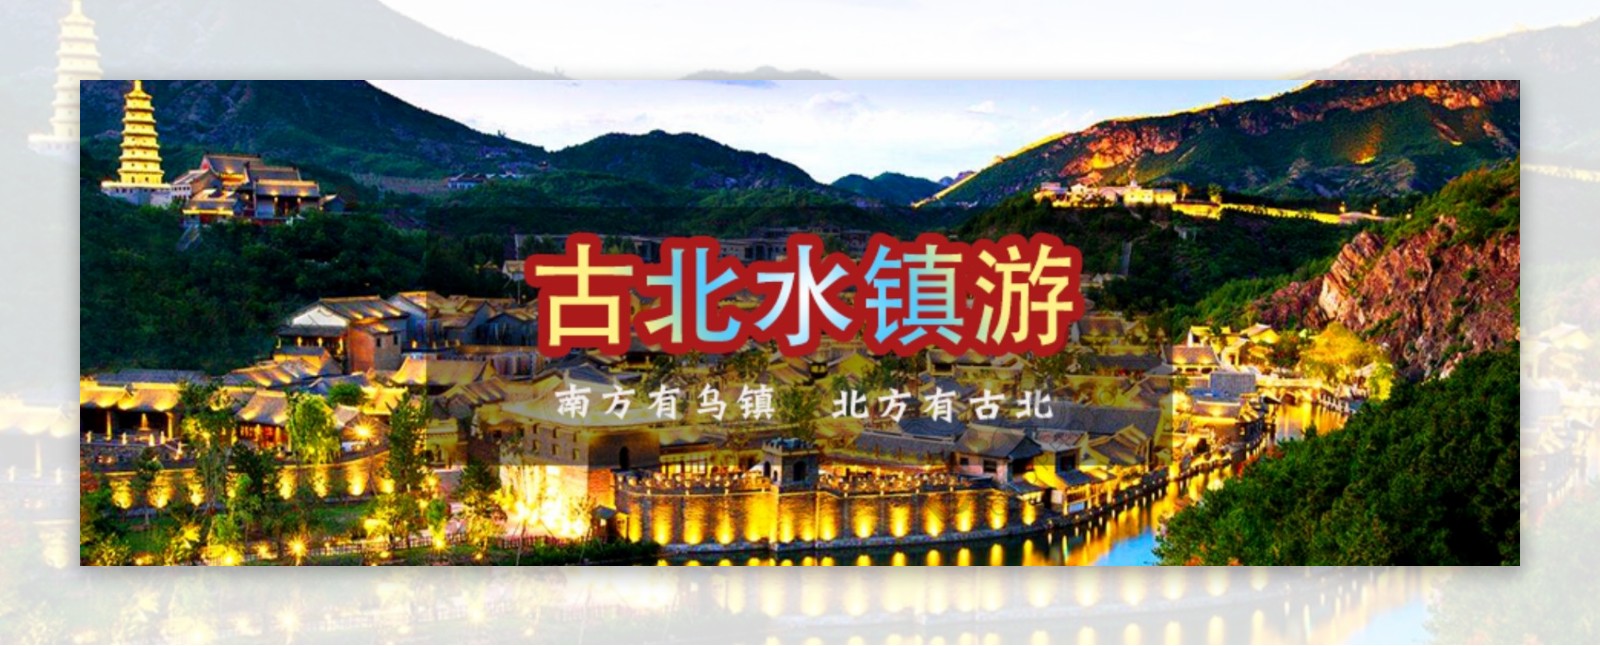 古北水镇网站banner